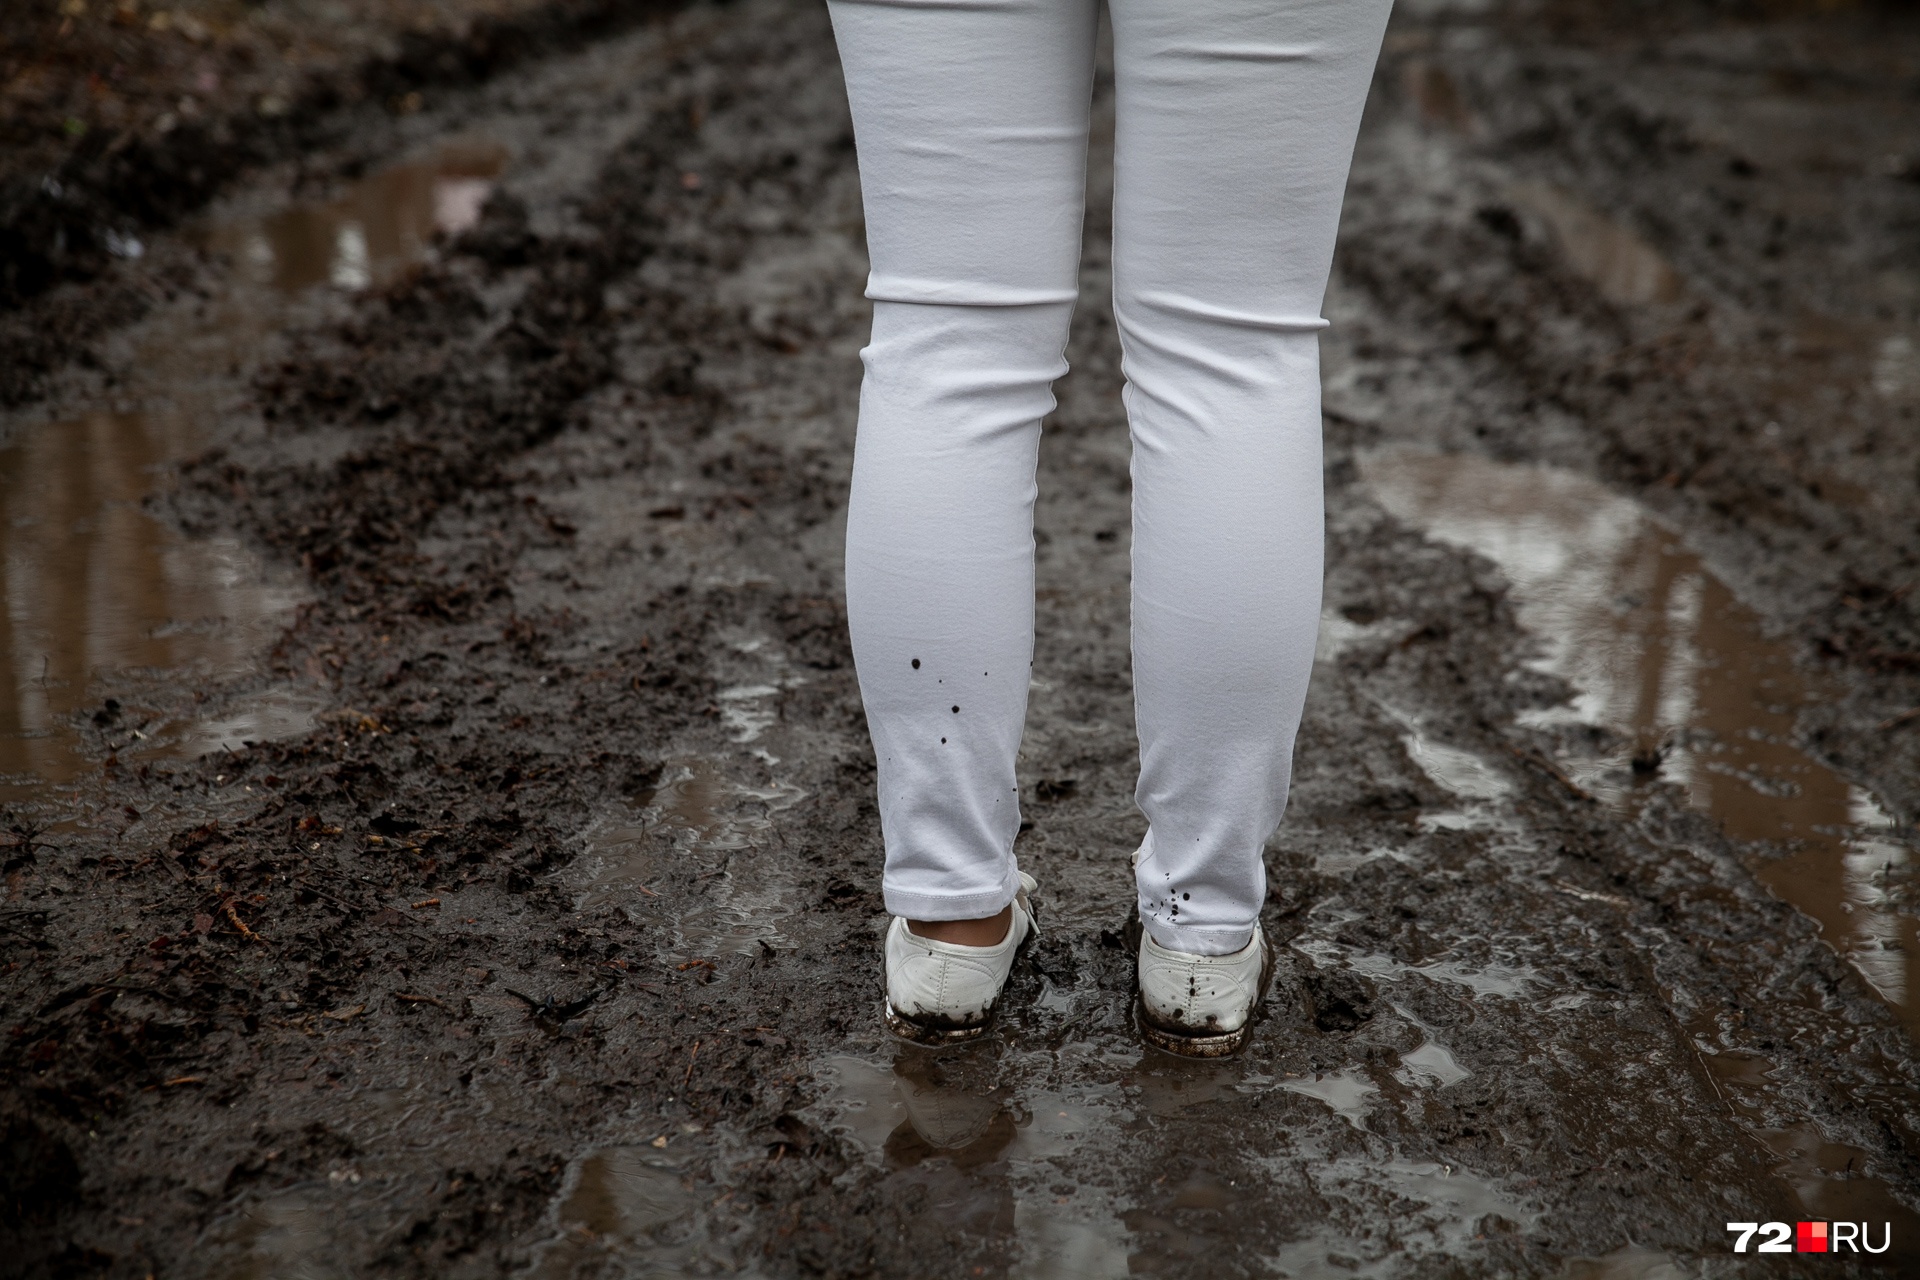 Вязкая грязь точно не оставит вашу обувь чистой. Если вы живете где-то в непроходимых дворах, лучше выбирать высокие резиновые сапоги. Замшевые или тканевые варианты не подойдут